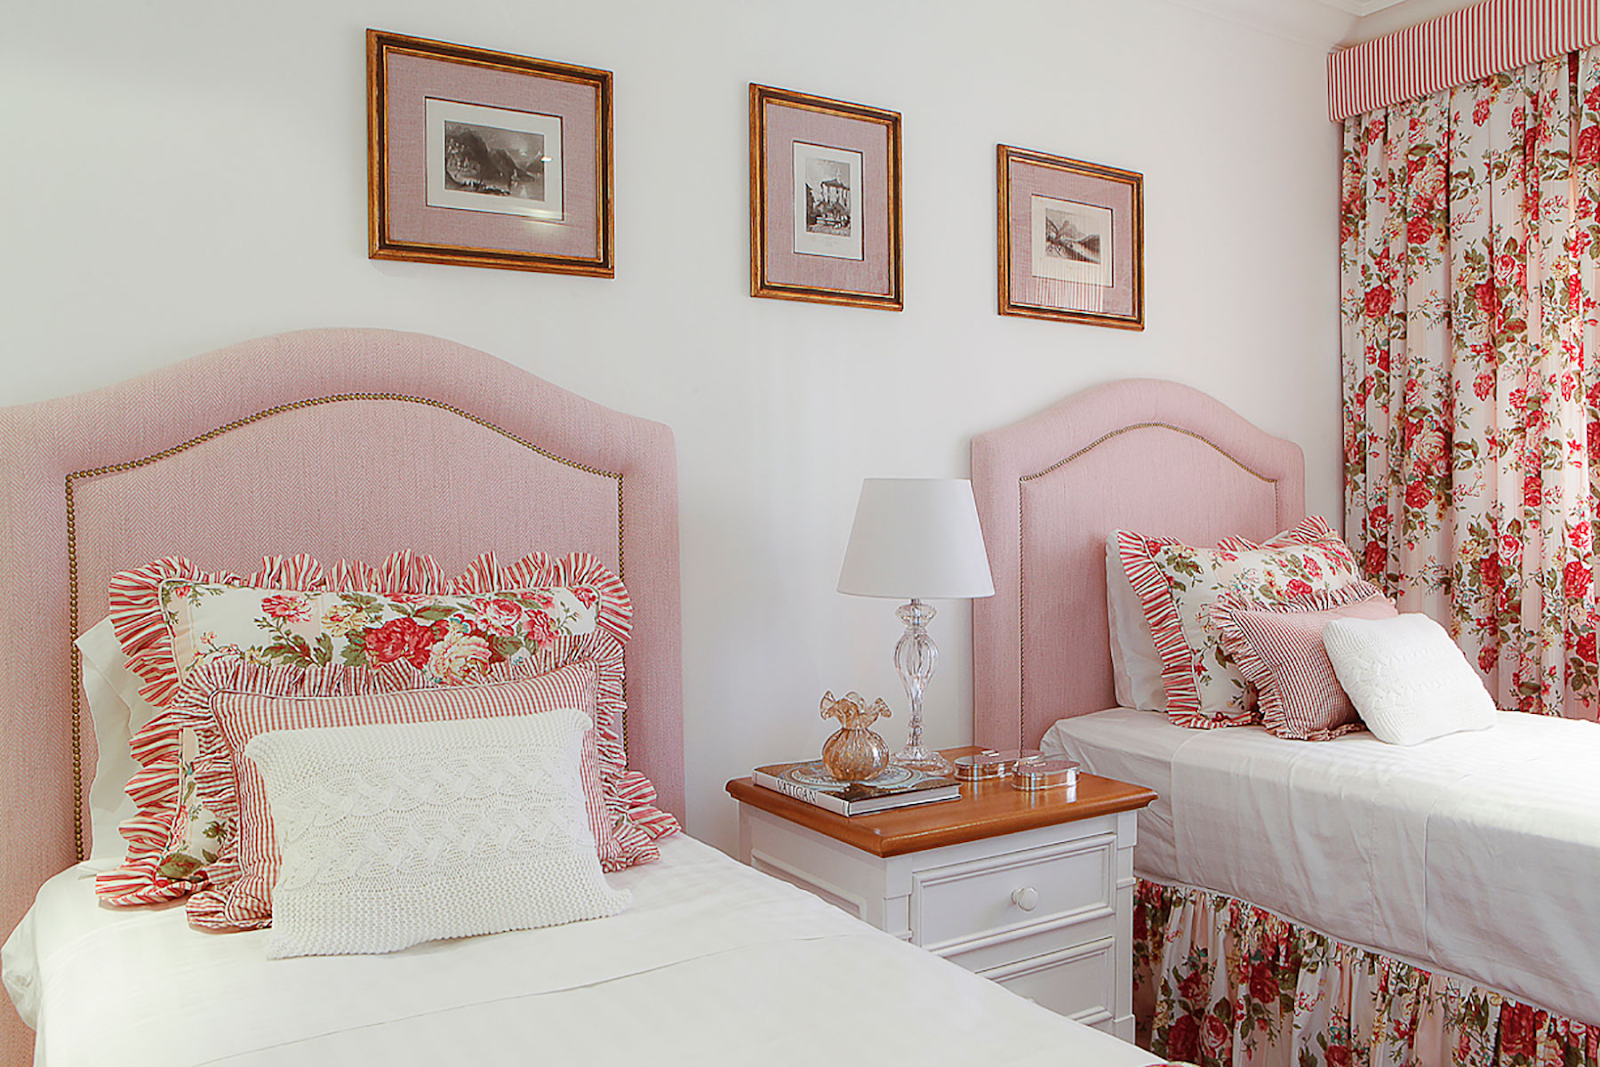 Quarto com cabeceira de cama rosa e cortina floral. Quadros na parede e criado mudo com marcenaria clássica.